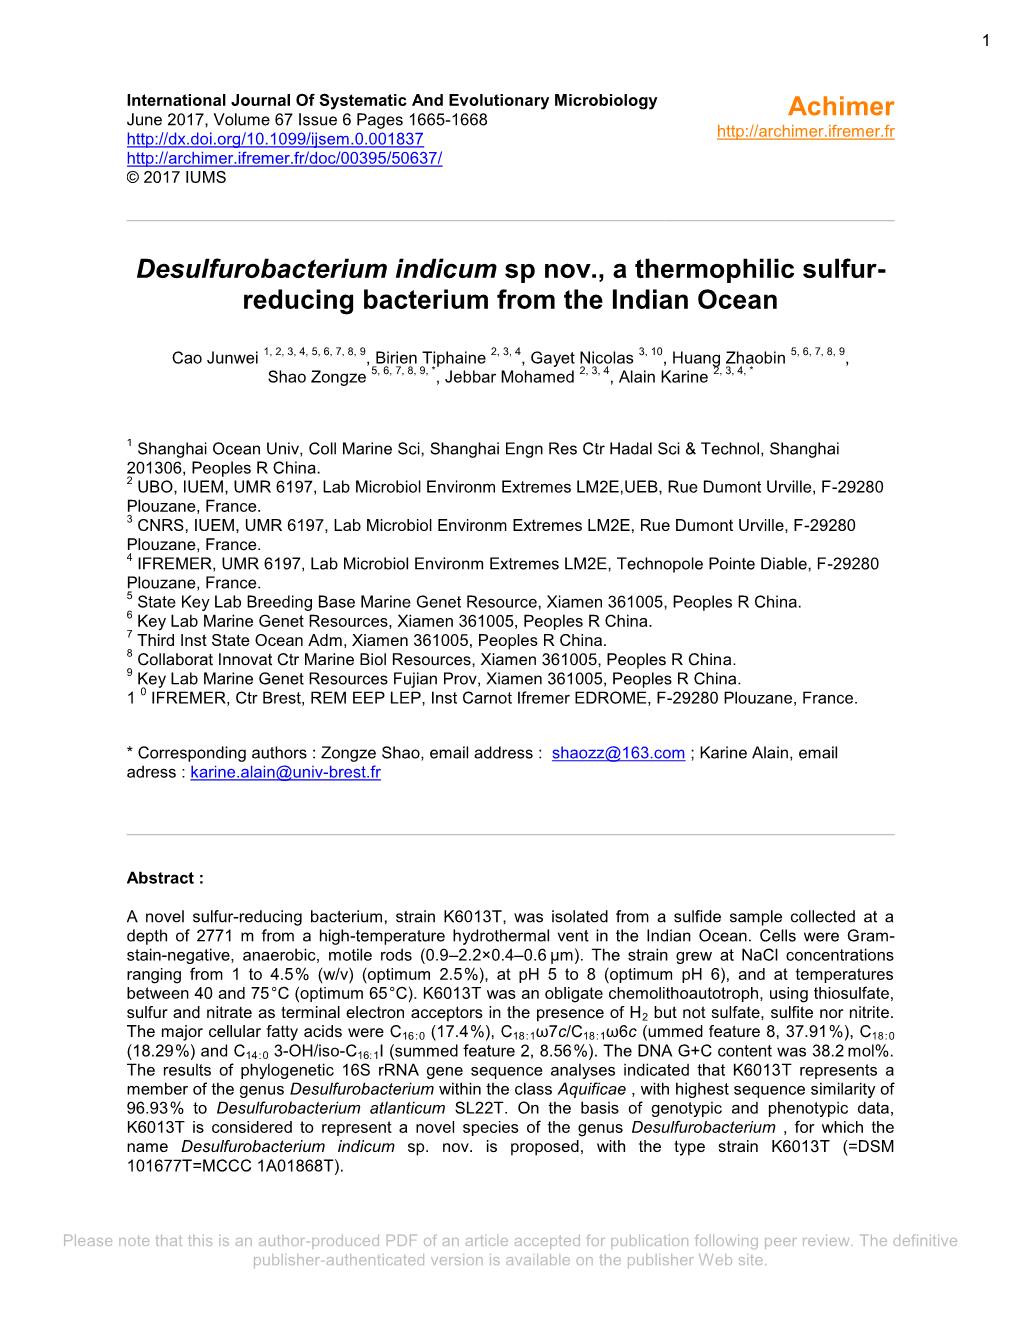 Desulfurobacterium Indicum Sp. Nov., a Thermophilic Sulfur-Reducing